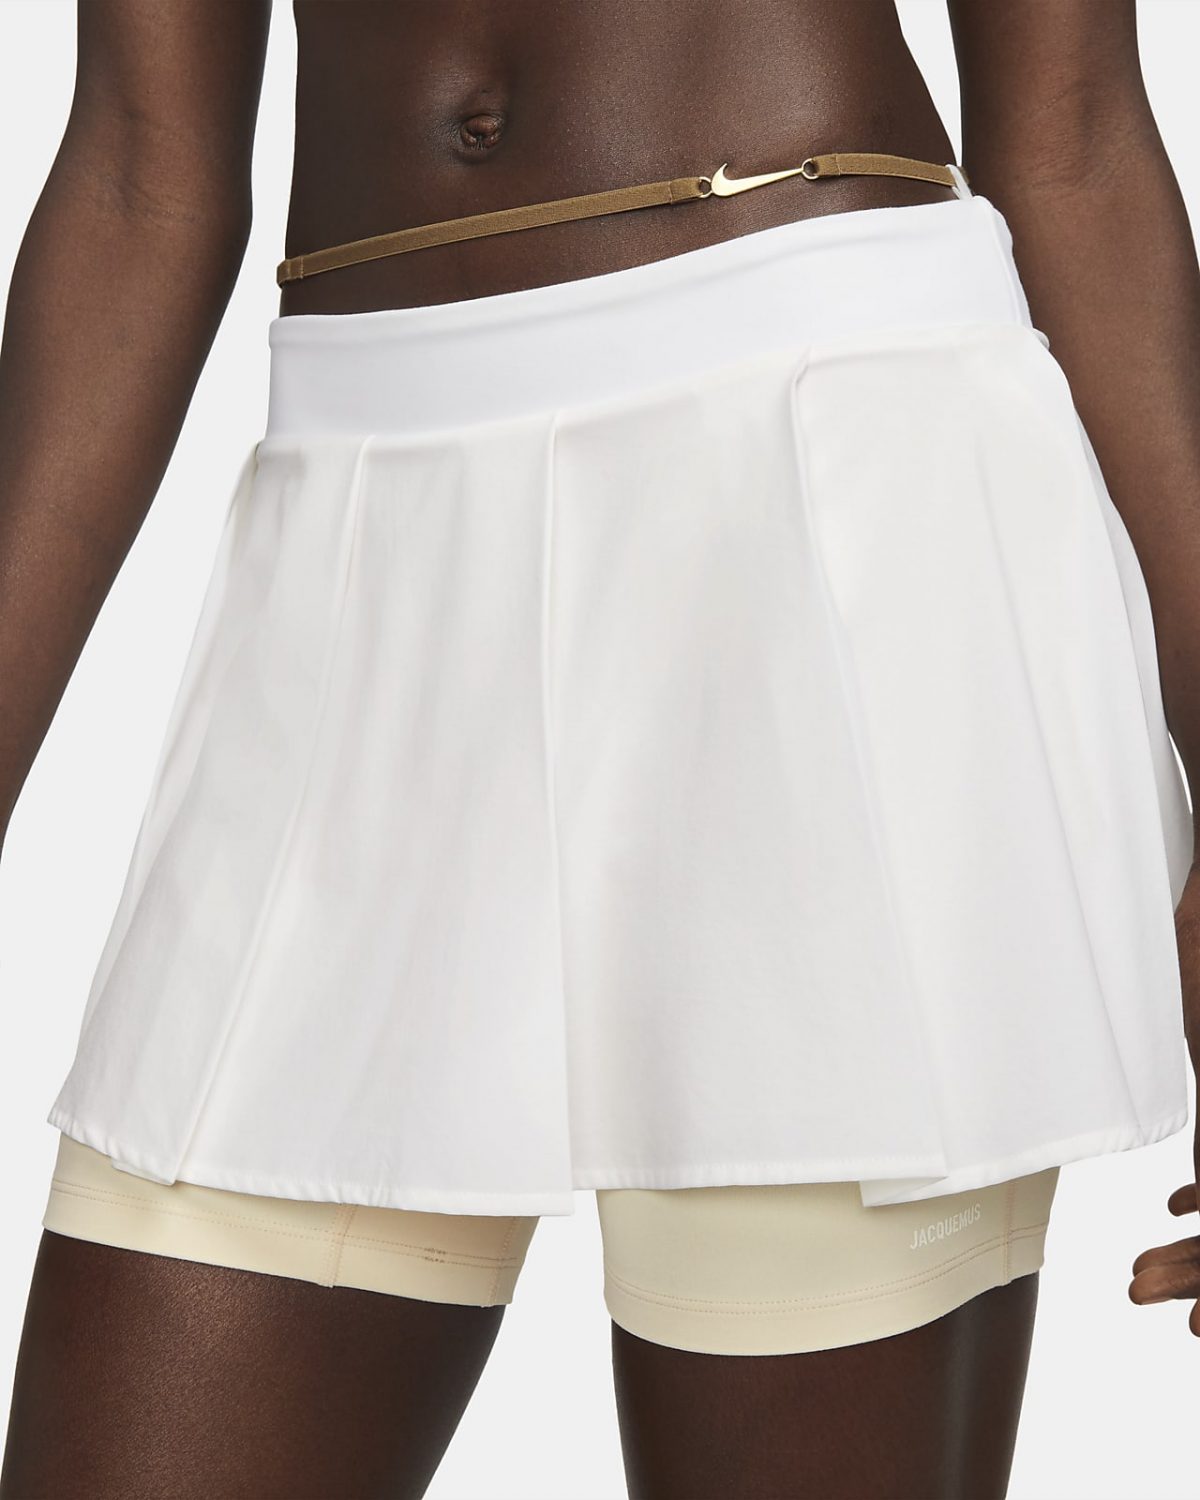 Женская юбка Nike x Jacquemus фотография